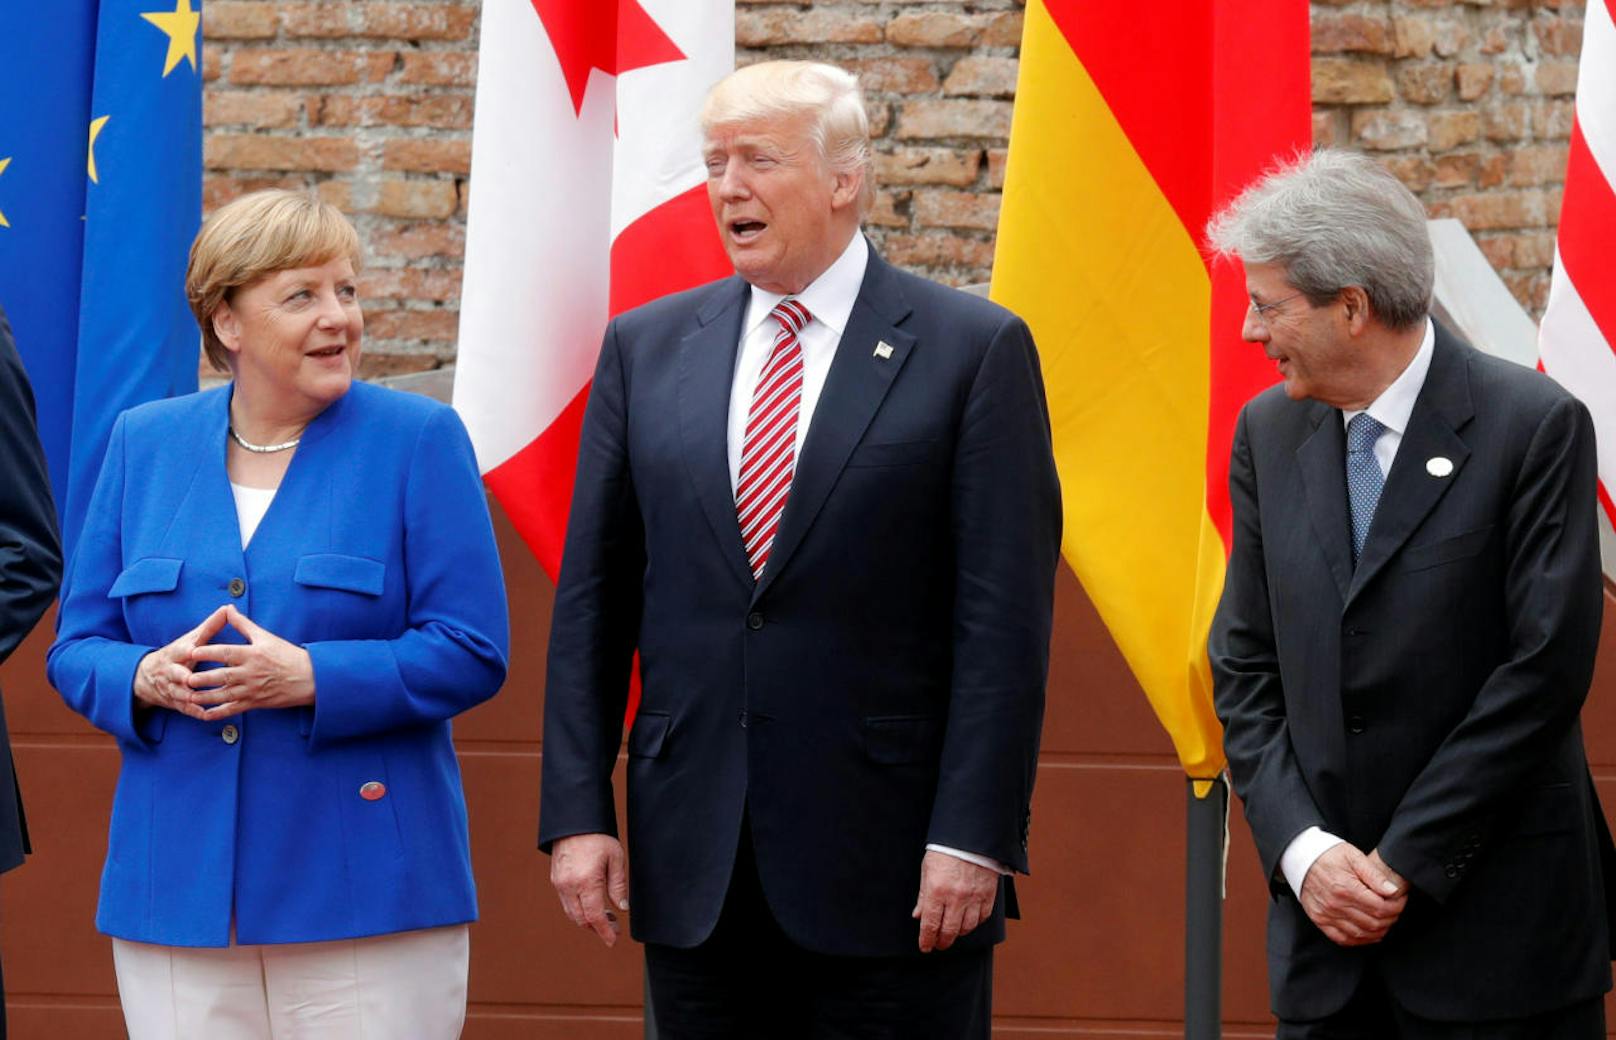 U.S. Präsident Donald Trump, die deutsche Kanzlerin Angela Merkel und der italienische Premierminister Paolo Gentiloni